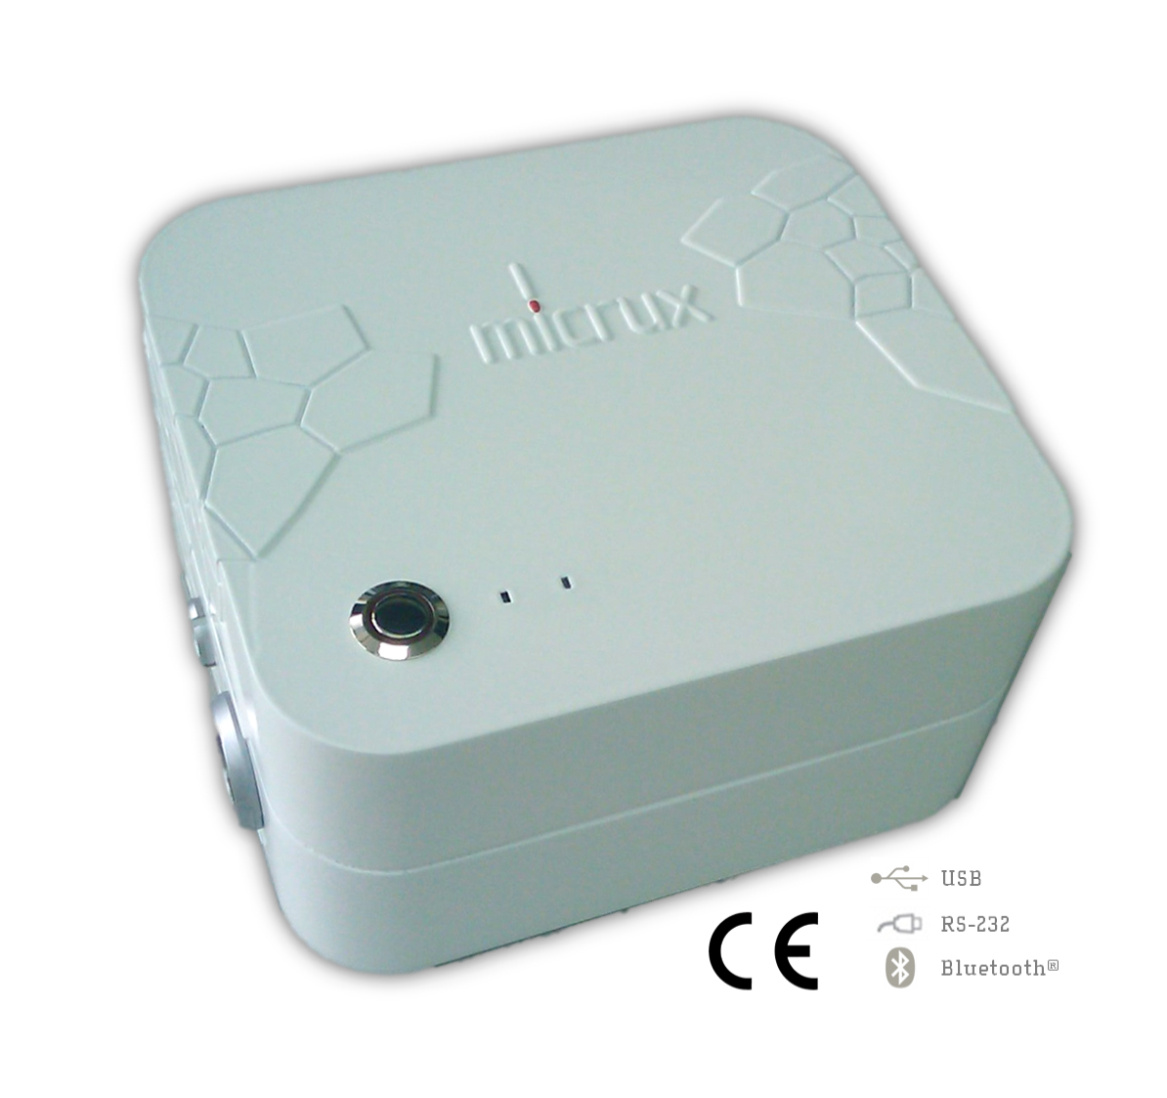 MicruX HVStat 携式自动微流控电泳系统